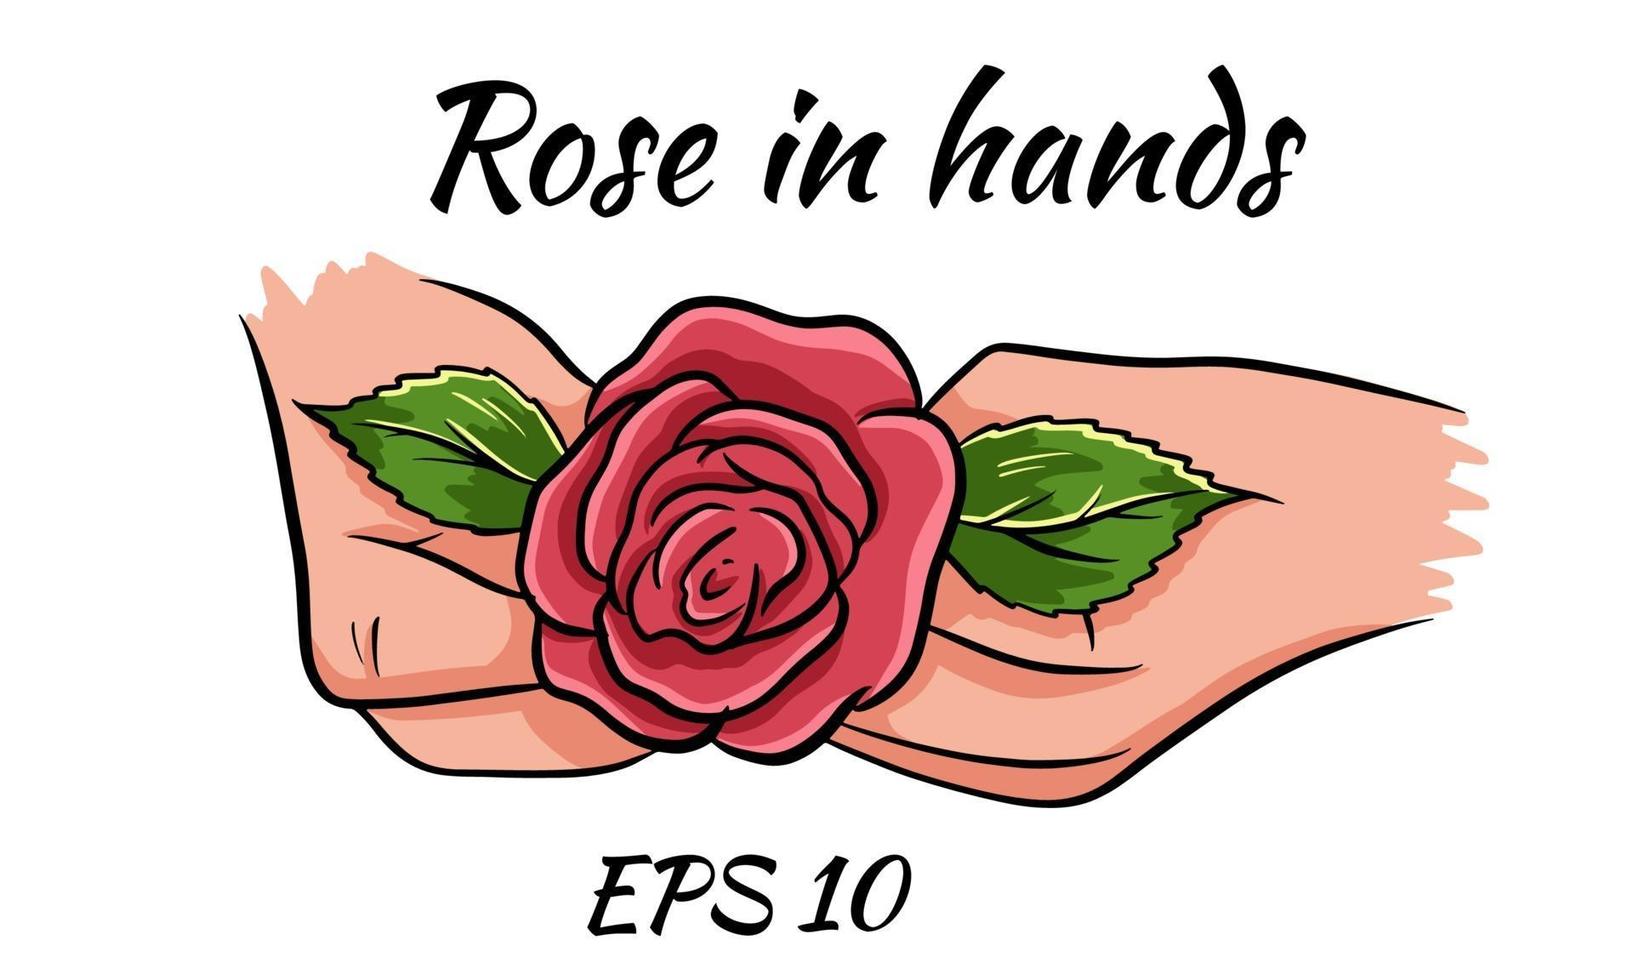 rosa vermelha em mãos femininas. desenho romantic.isolated sobre um fundo branco. vetor